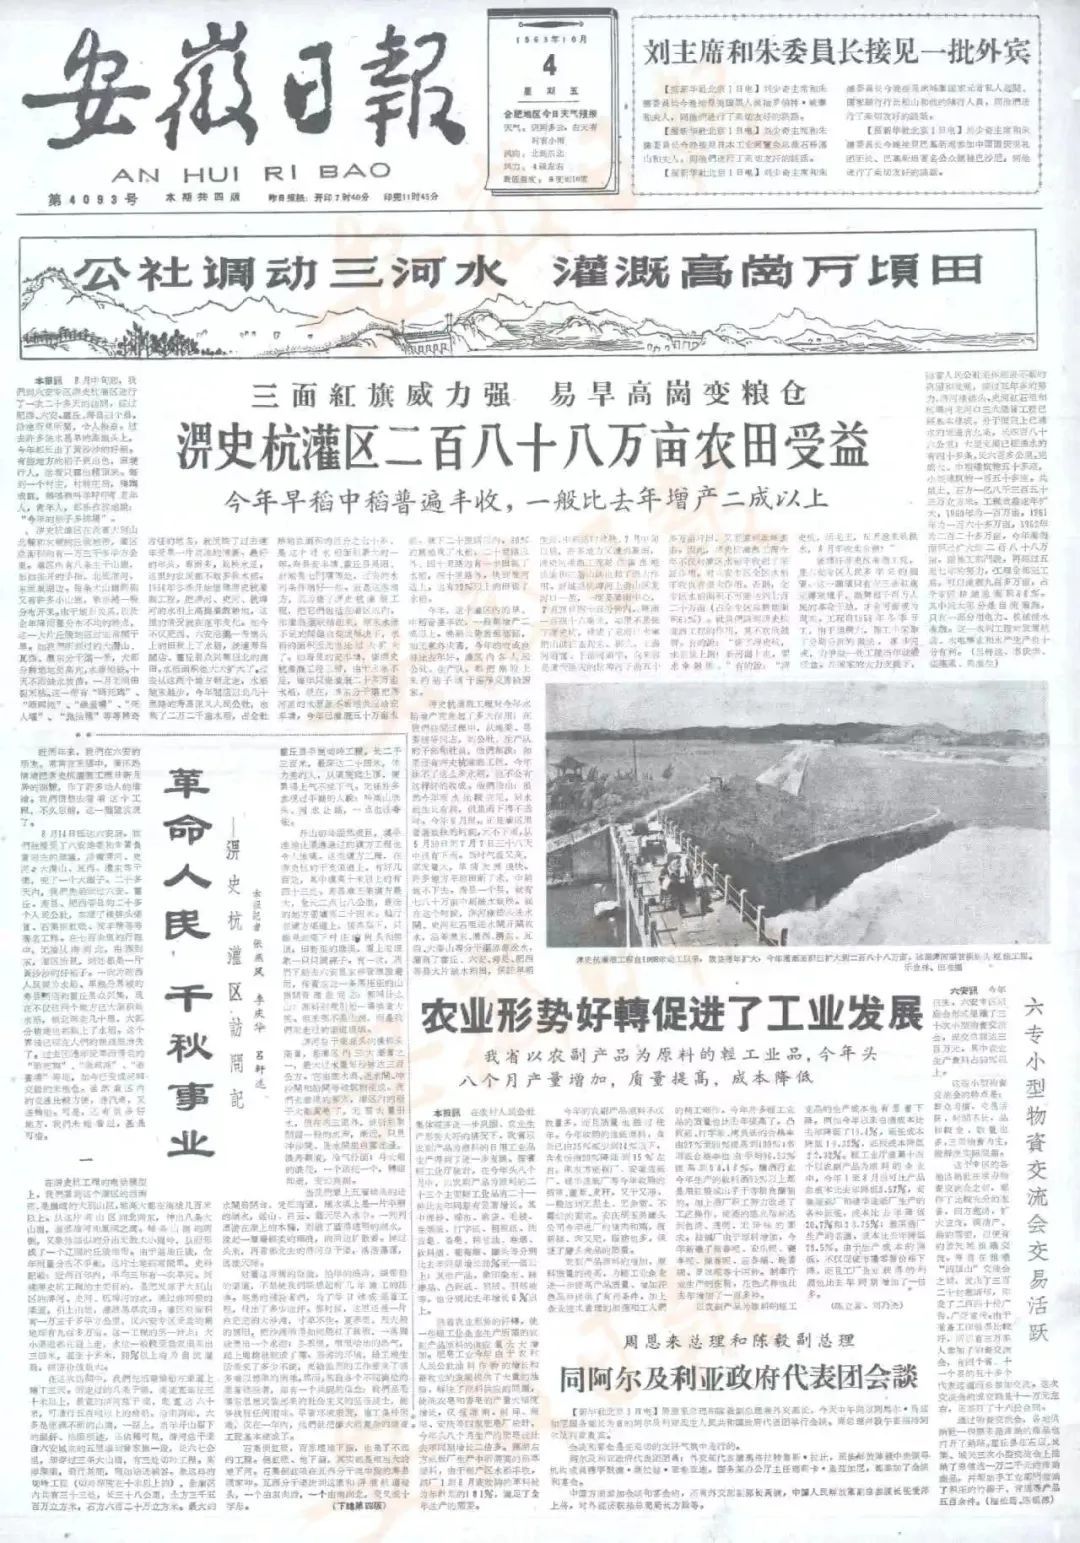 1963年10月4日的《安徽日报》1版